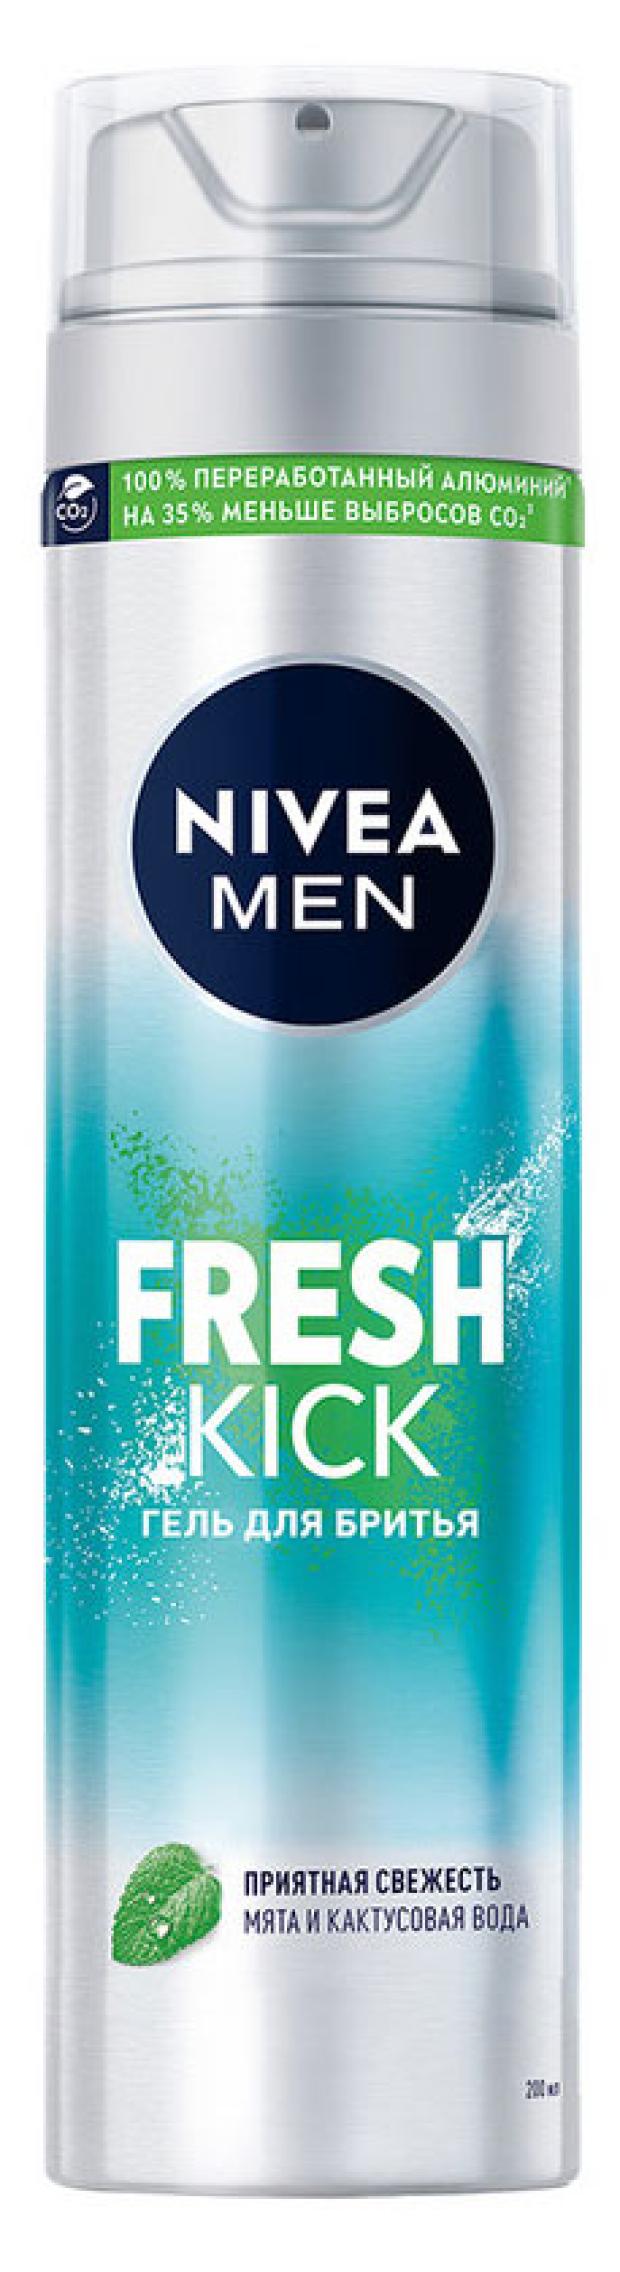 гель для бритья nivea men fresh kick приятная свежесть с мятой